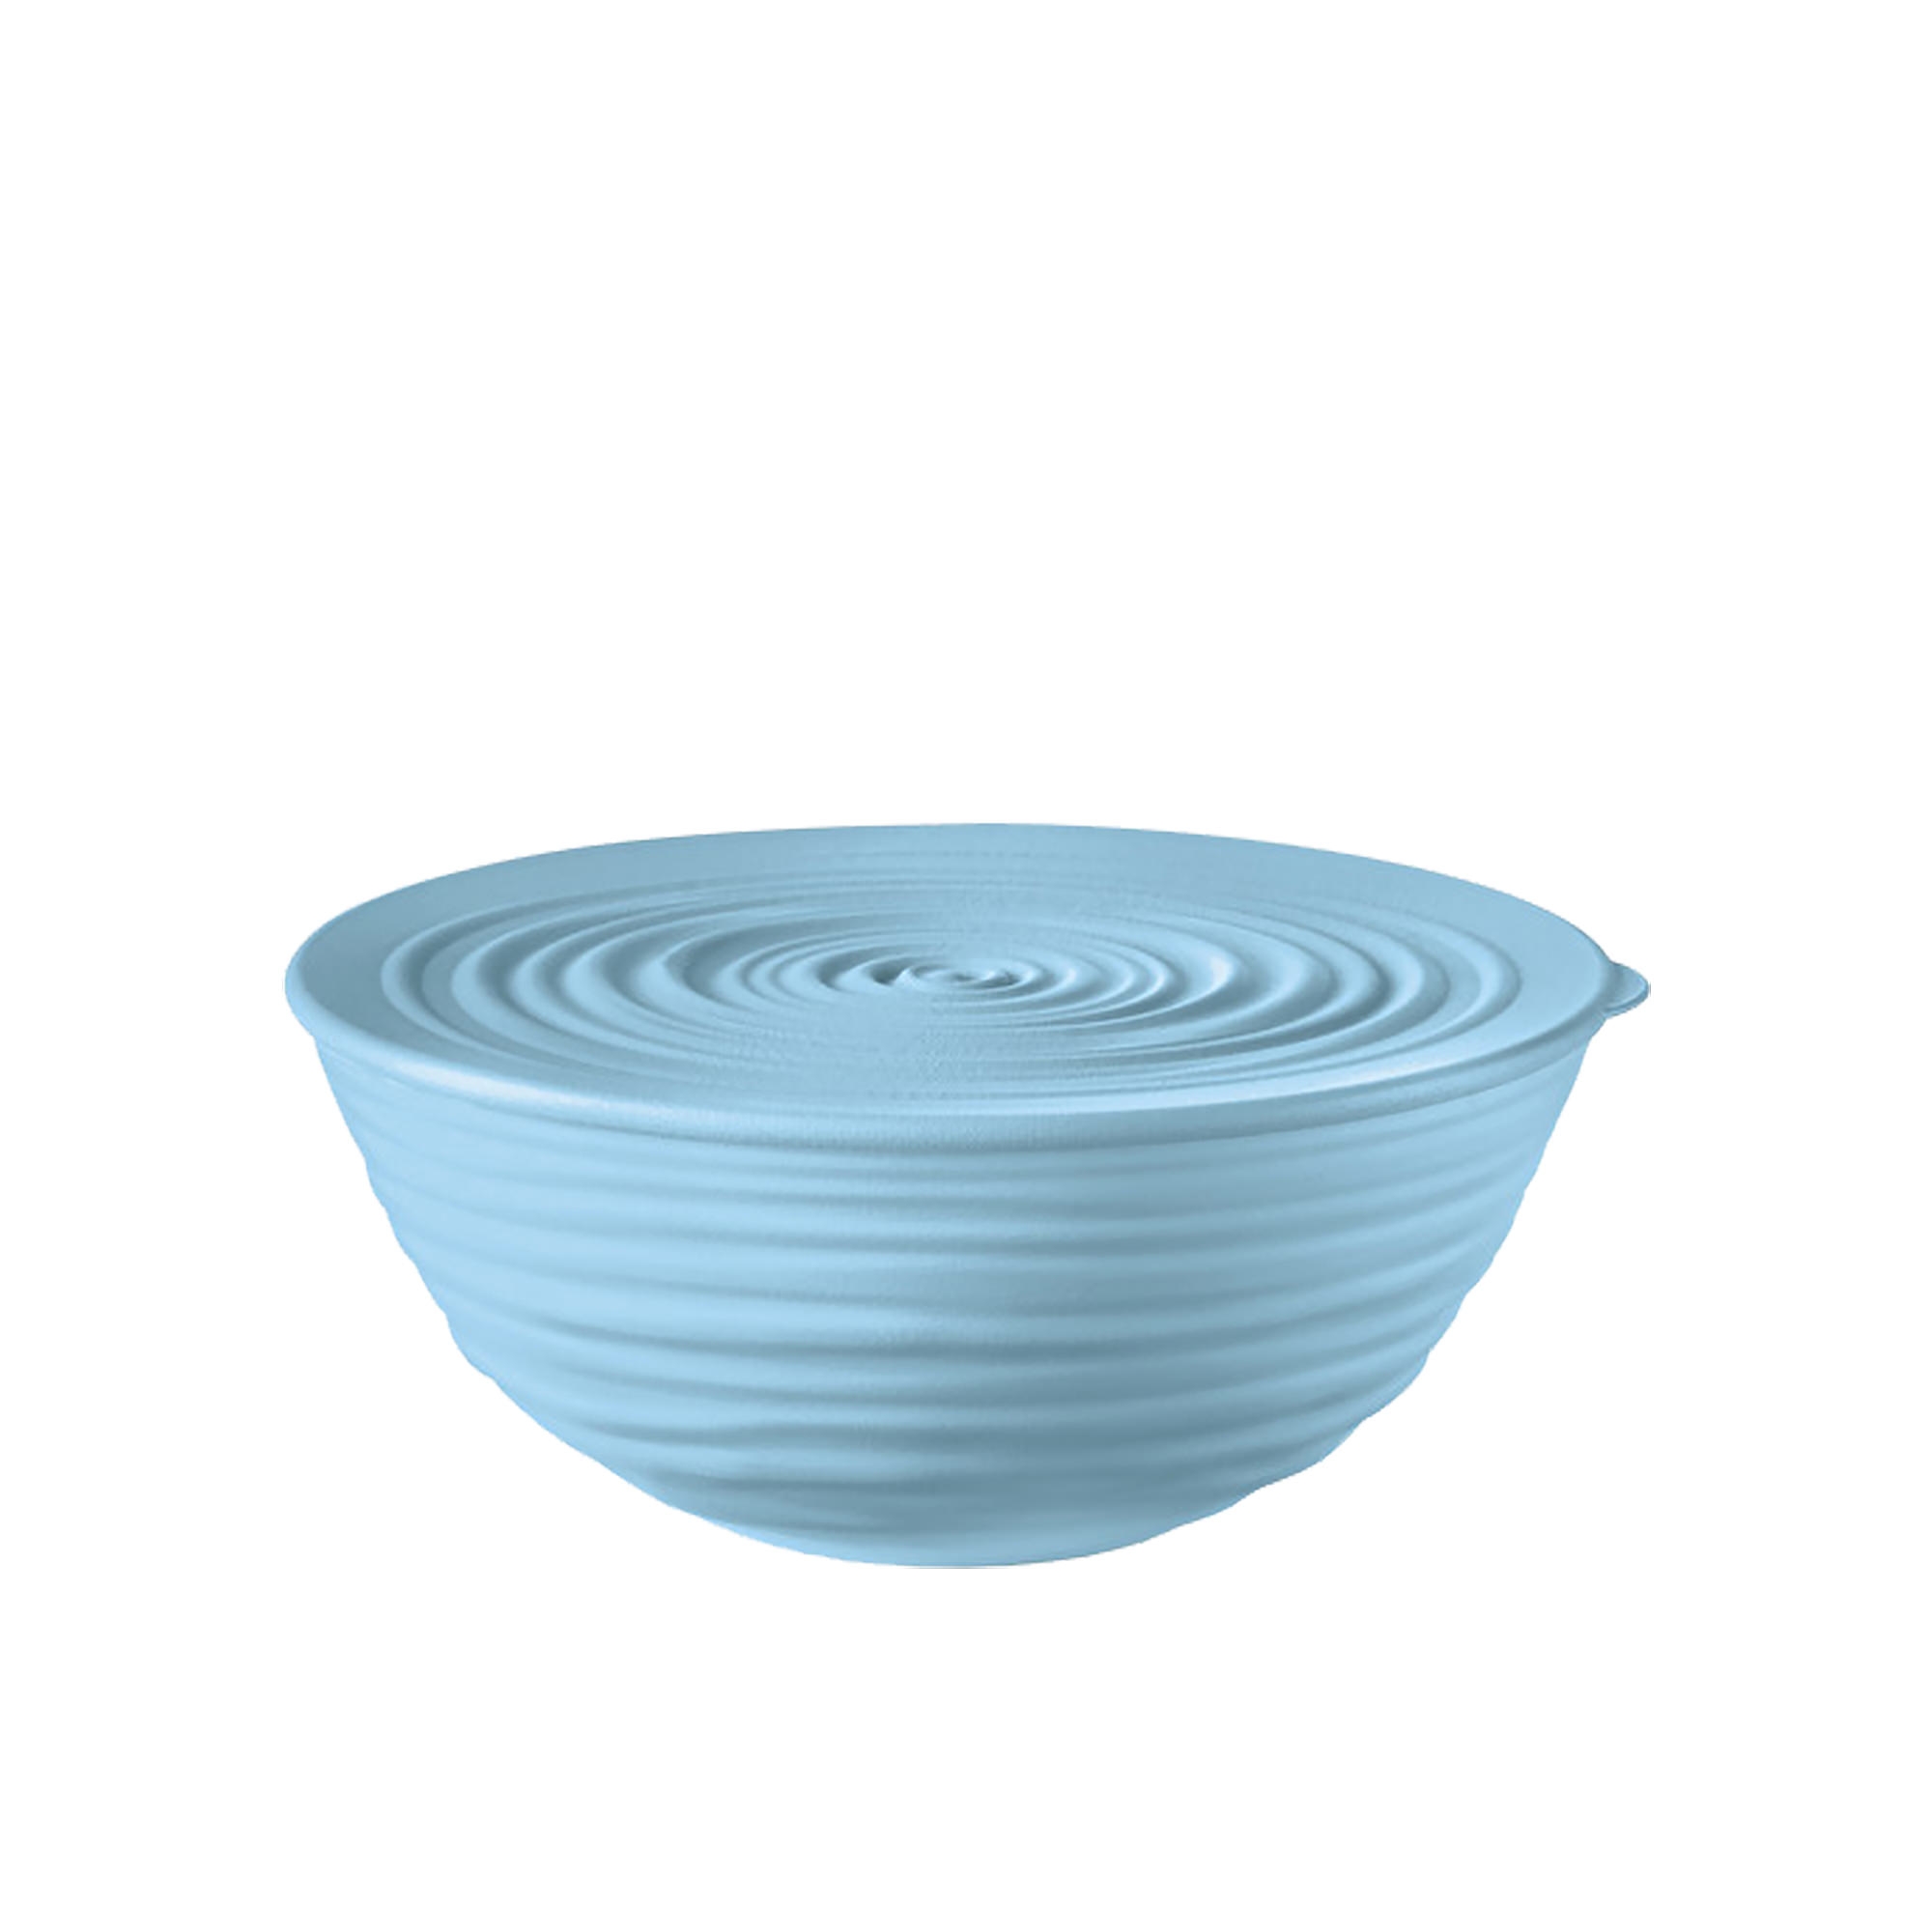 Guzzini Earth Tierra Bowl with Lid Medium Powder Blue Image 1